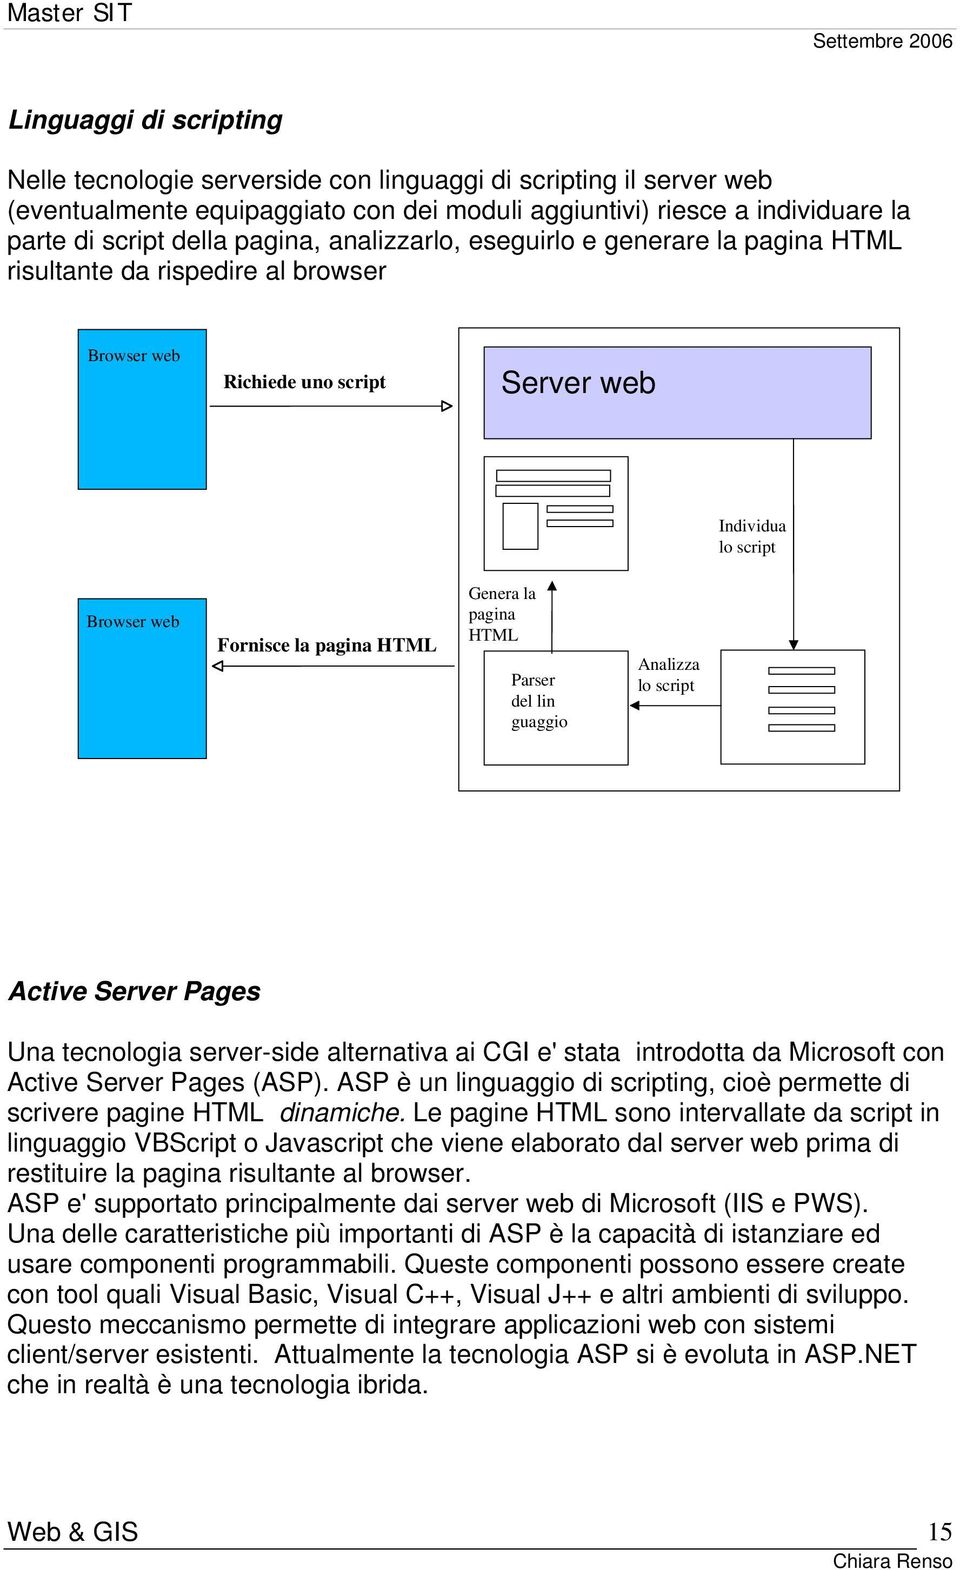 la pagina HTML Parser del lin guaggio Analizza lo script Active Server Pages Una tecnologia server-side alternativa ai CGI e' stata introdotta da Microsoft con Active Server Pages (ASP).